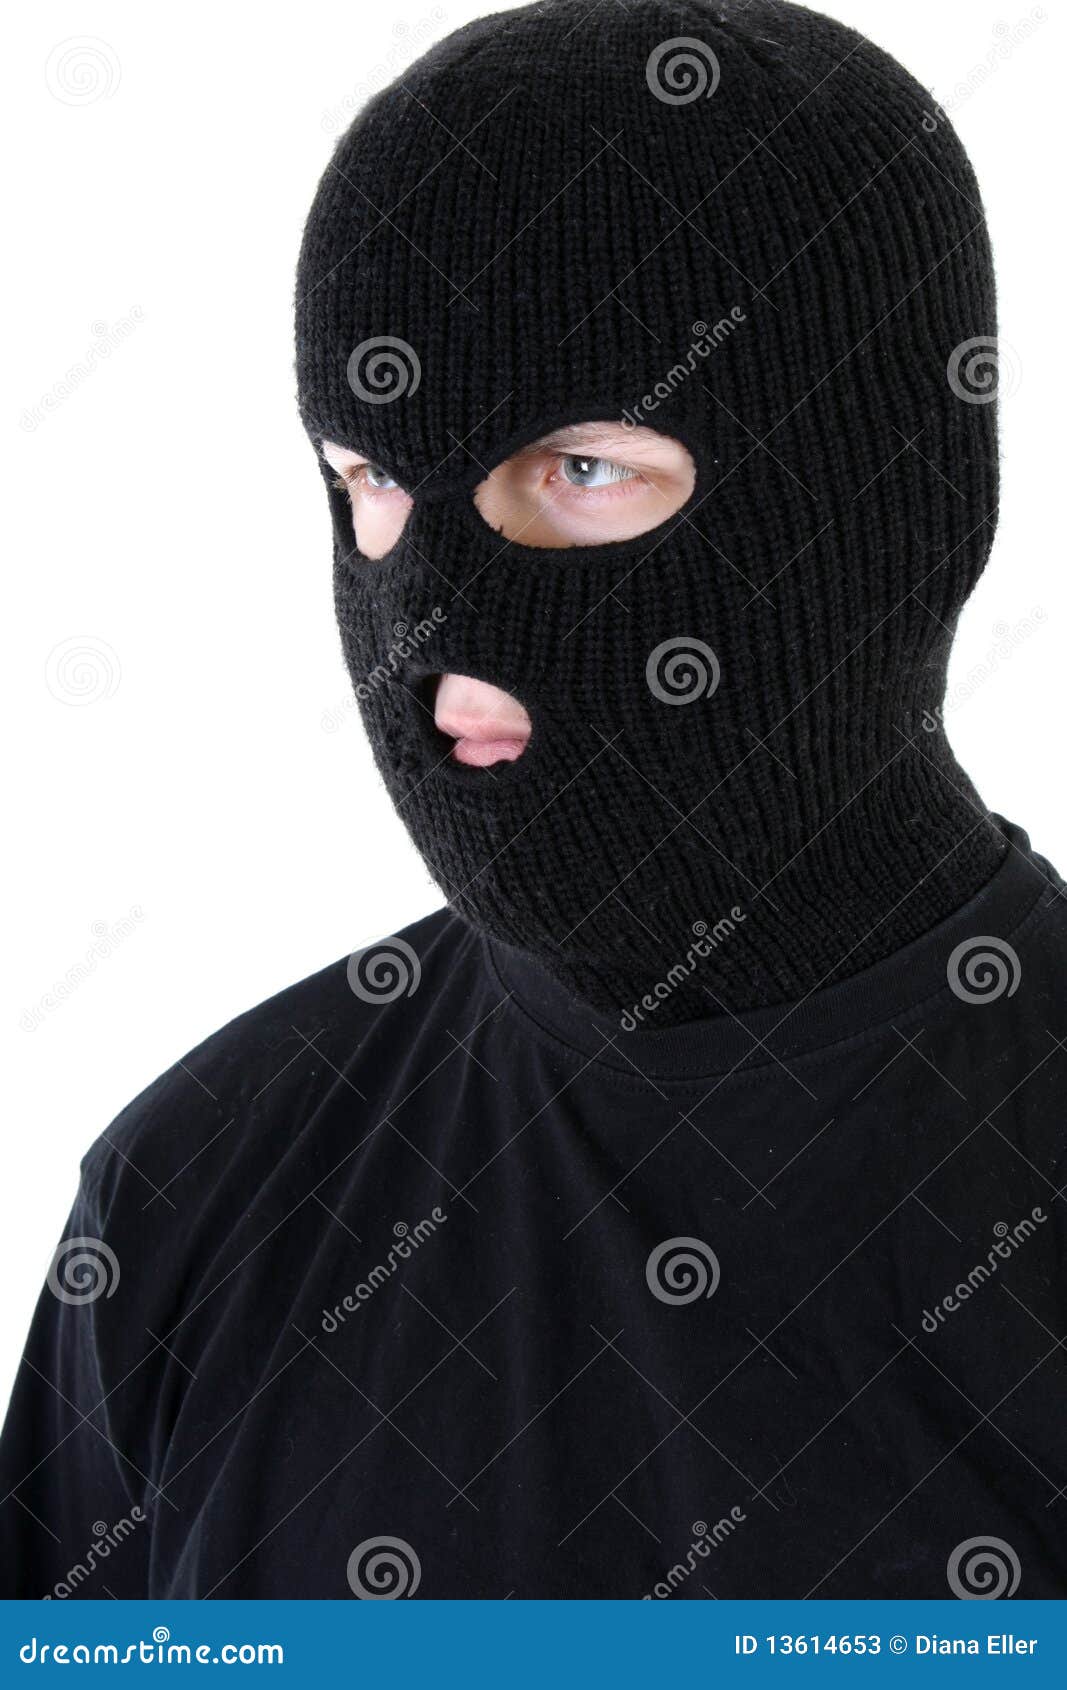 Сегодня будут показывать маску. Бандиты в масках. Маска бандита маска бандита. Бандит в черной маске. Маска черная бандитская.